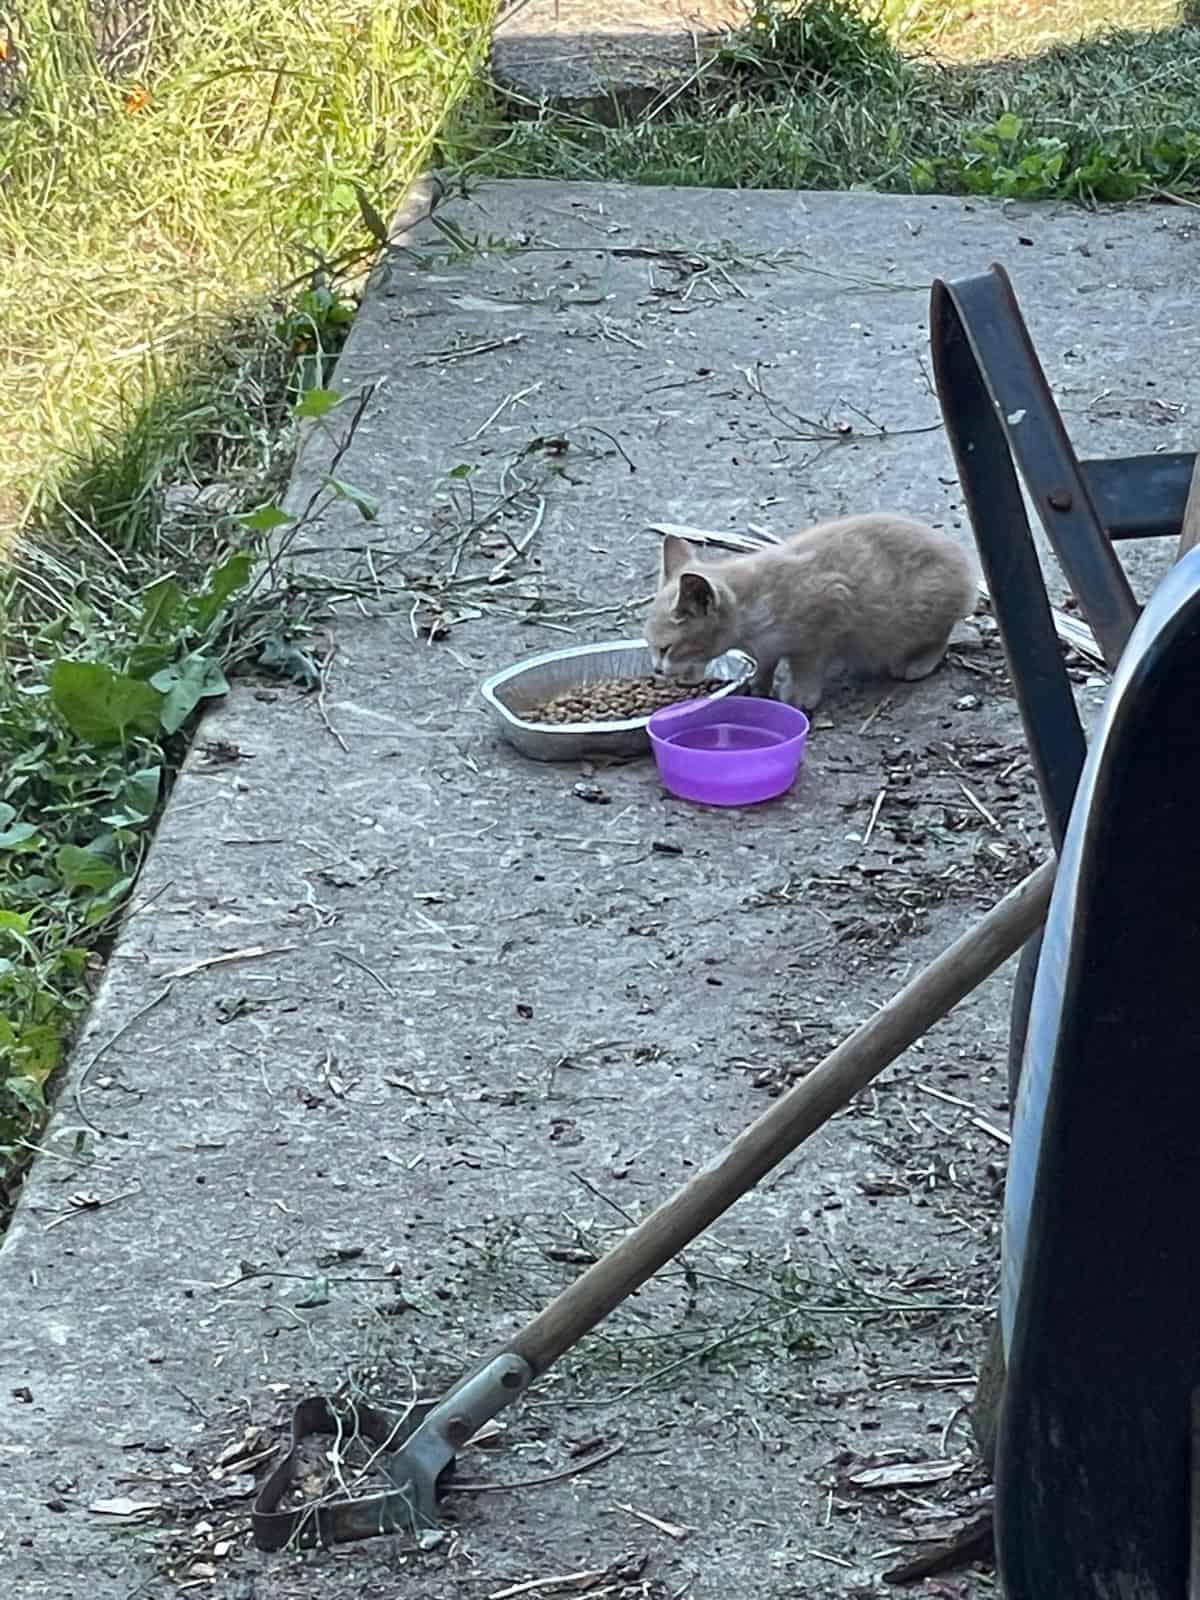 a kitten eating.